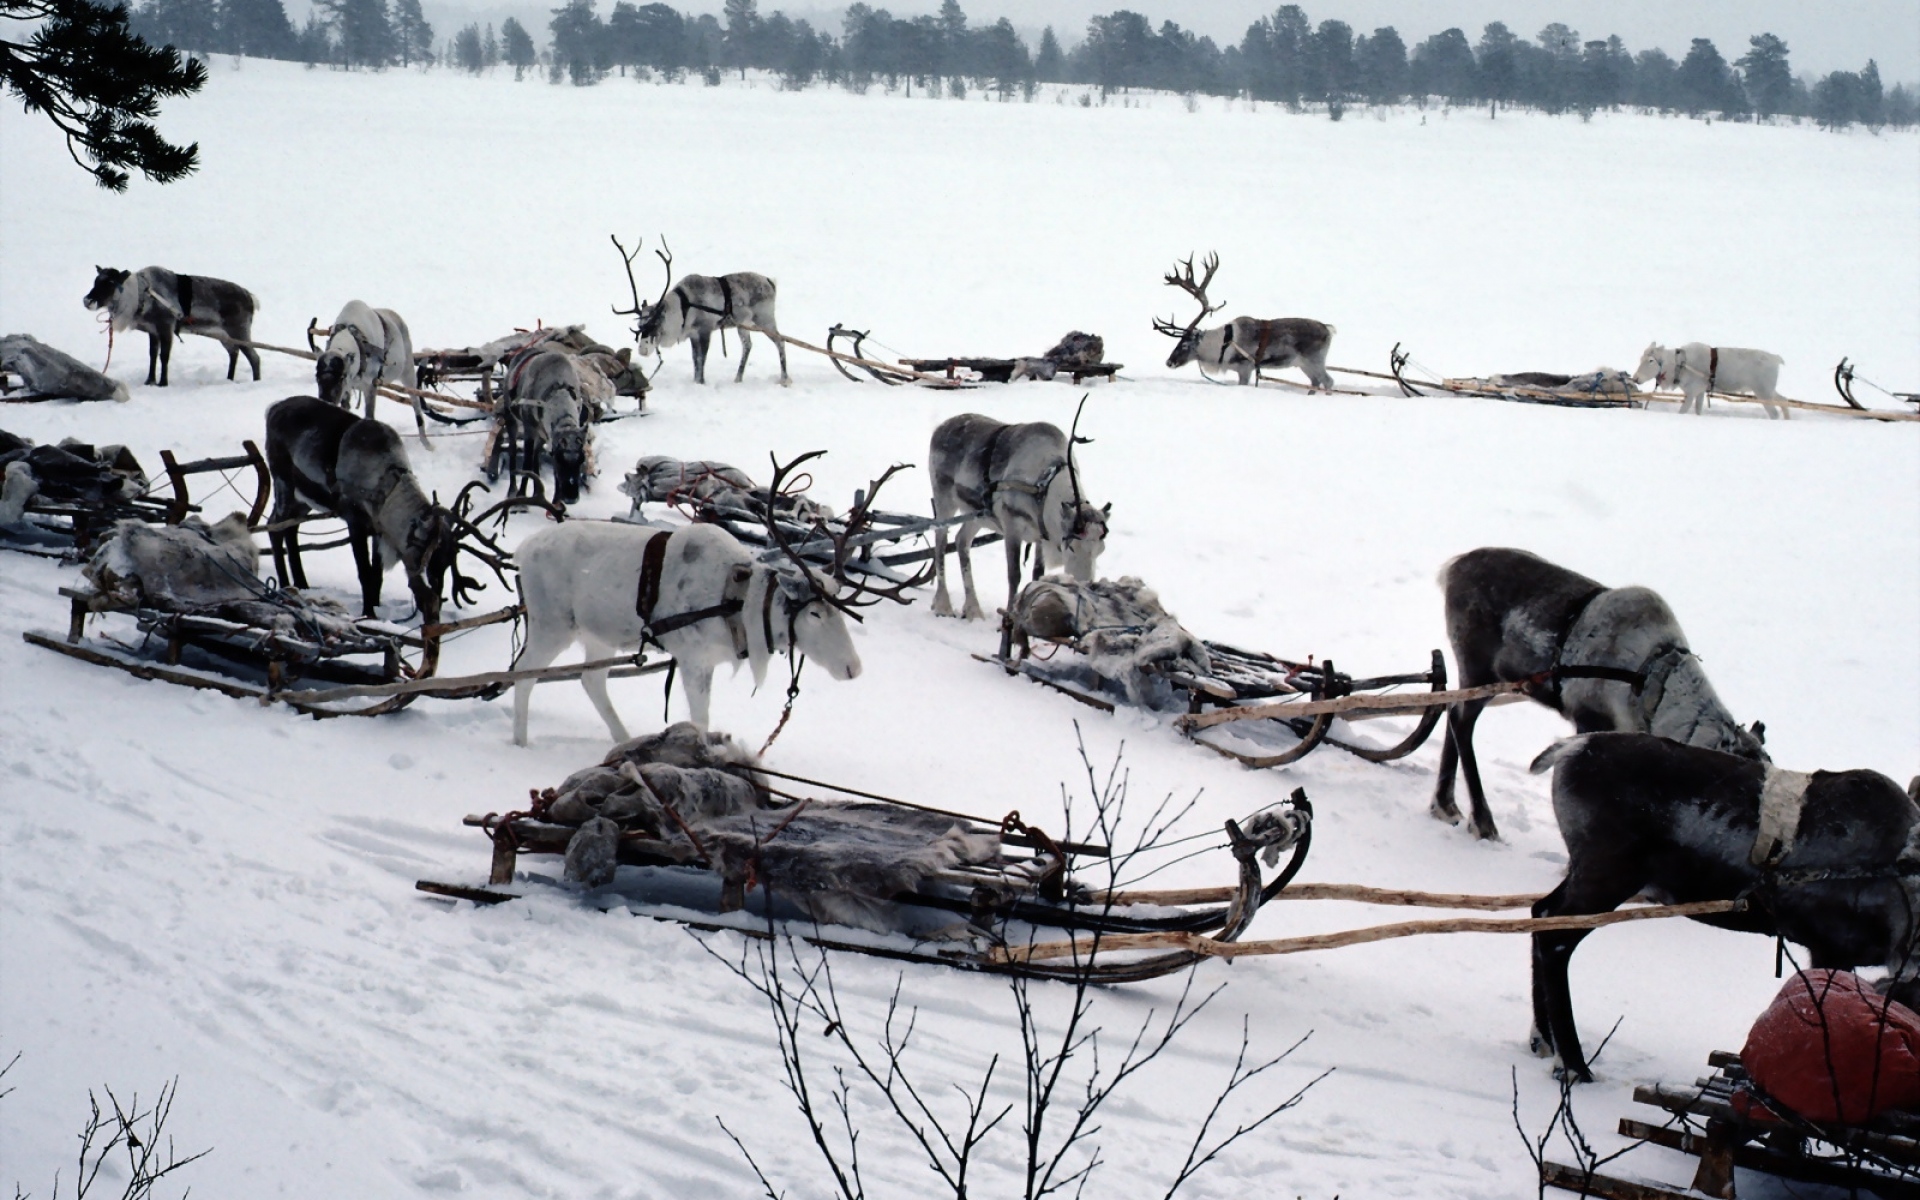 Картинки Снег, олень, санки, команда, транспорт, северный полюс фото и обои на рабочий стол